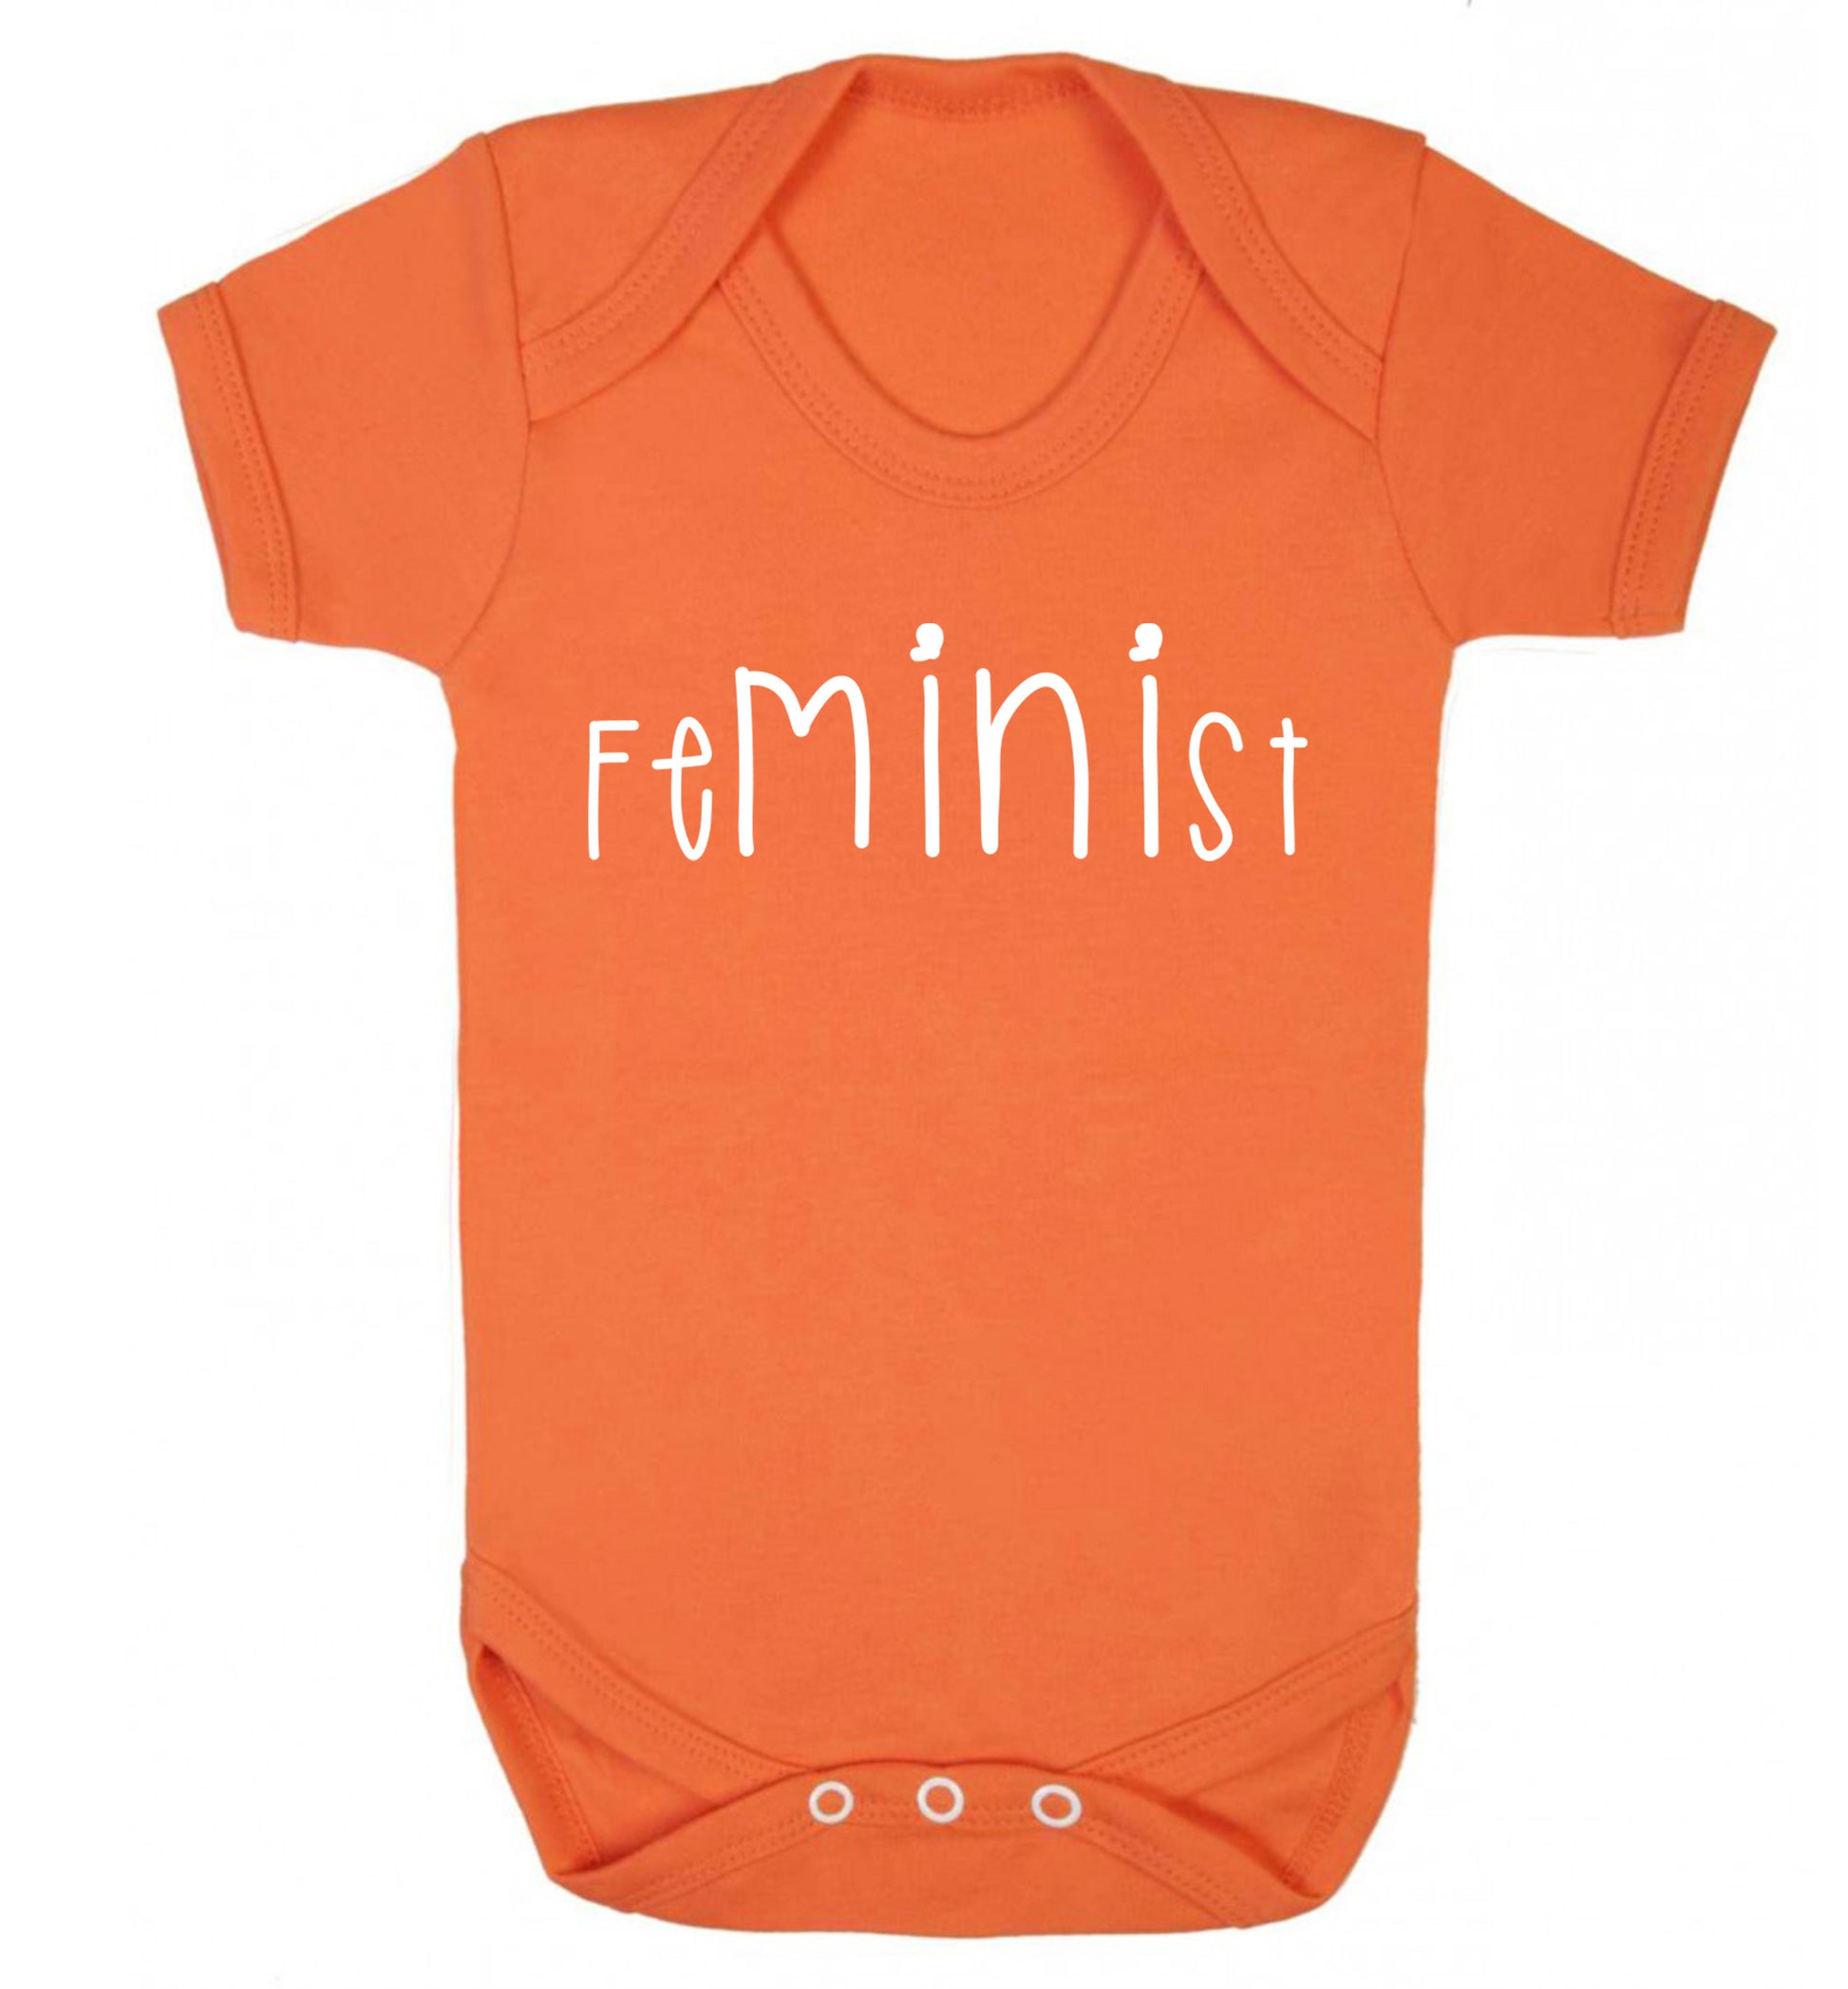 FeMINIst Baby Vest orange 18-24 months